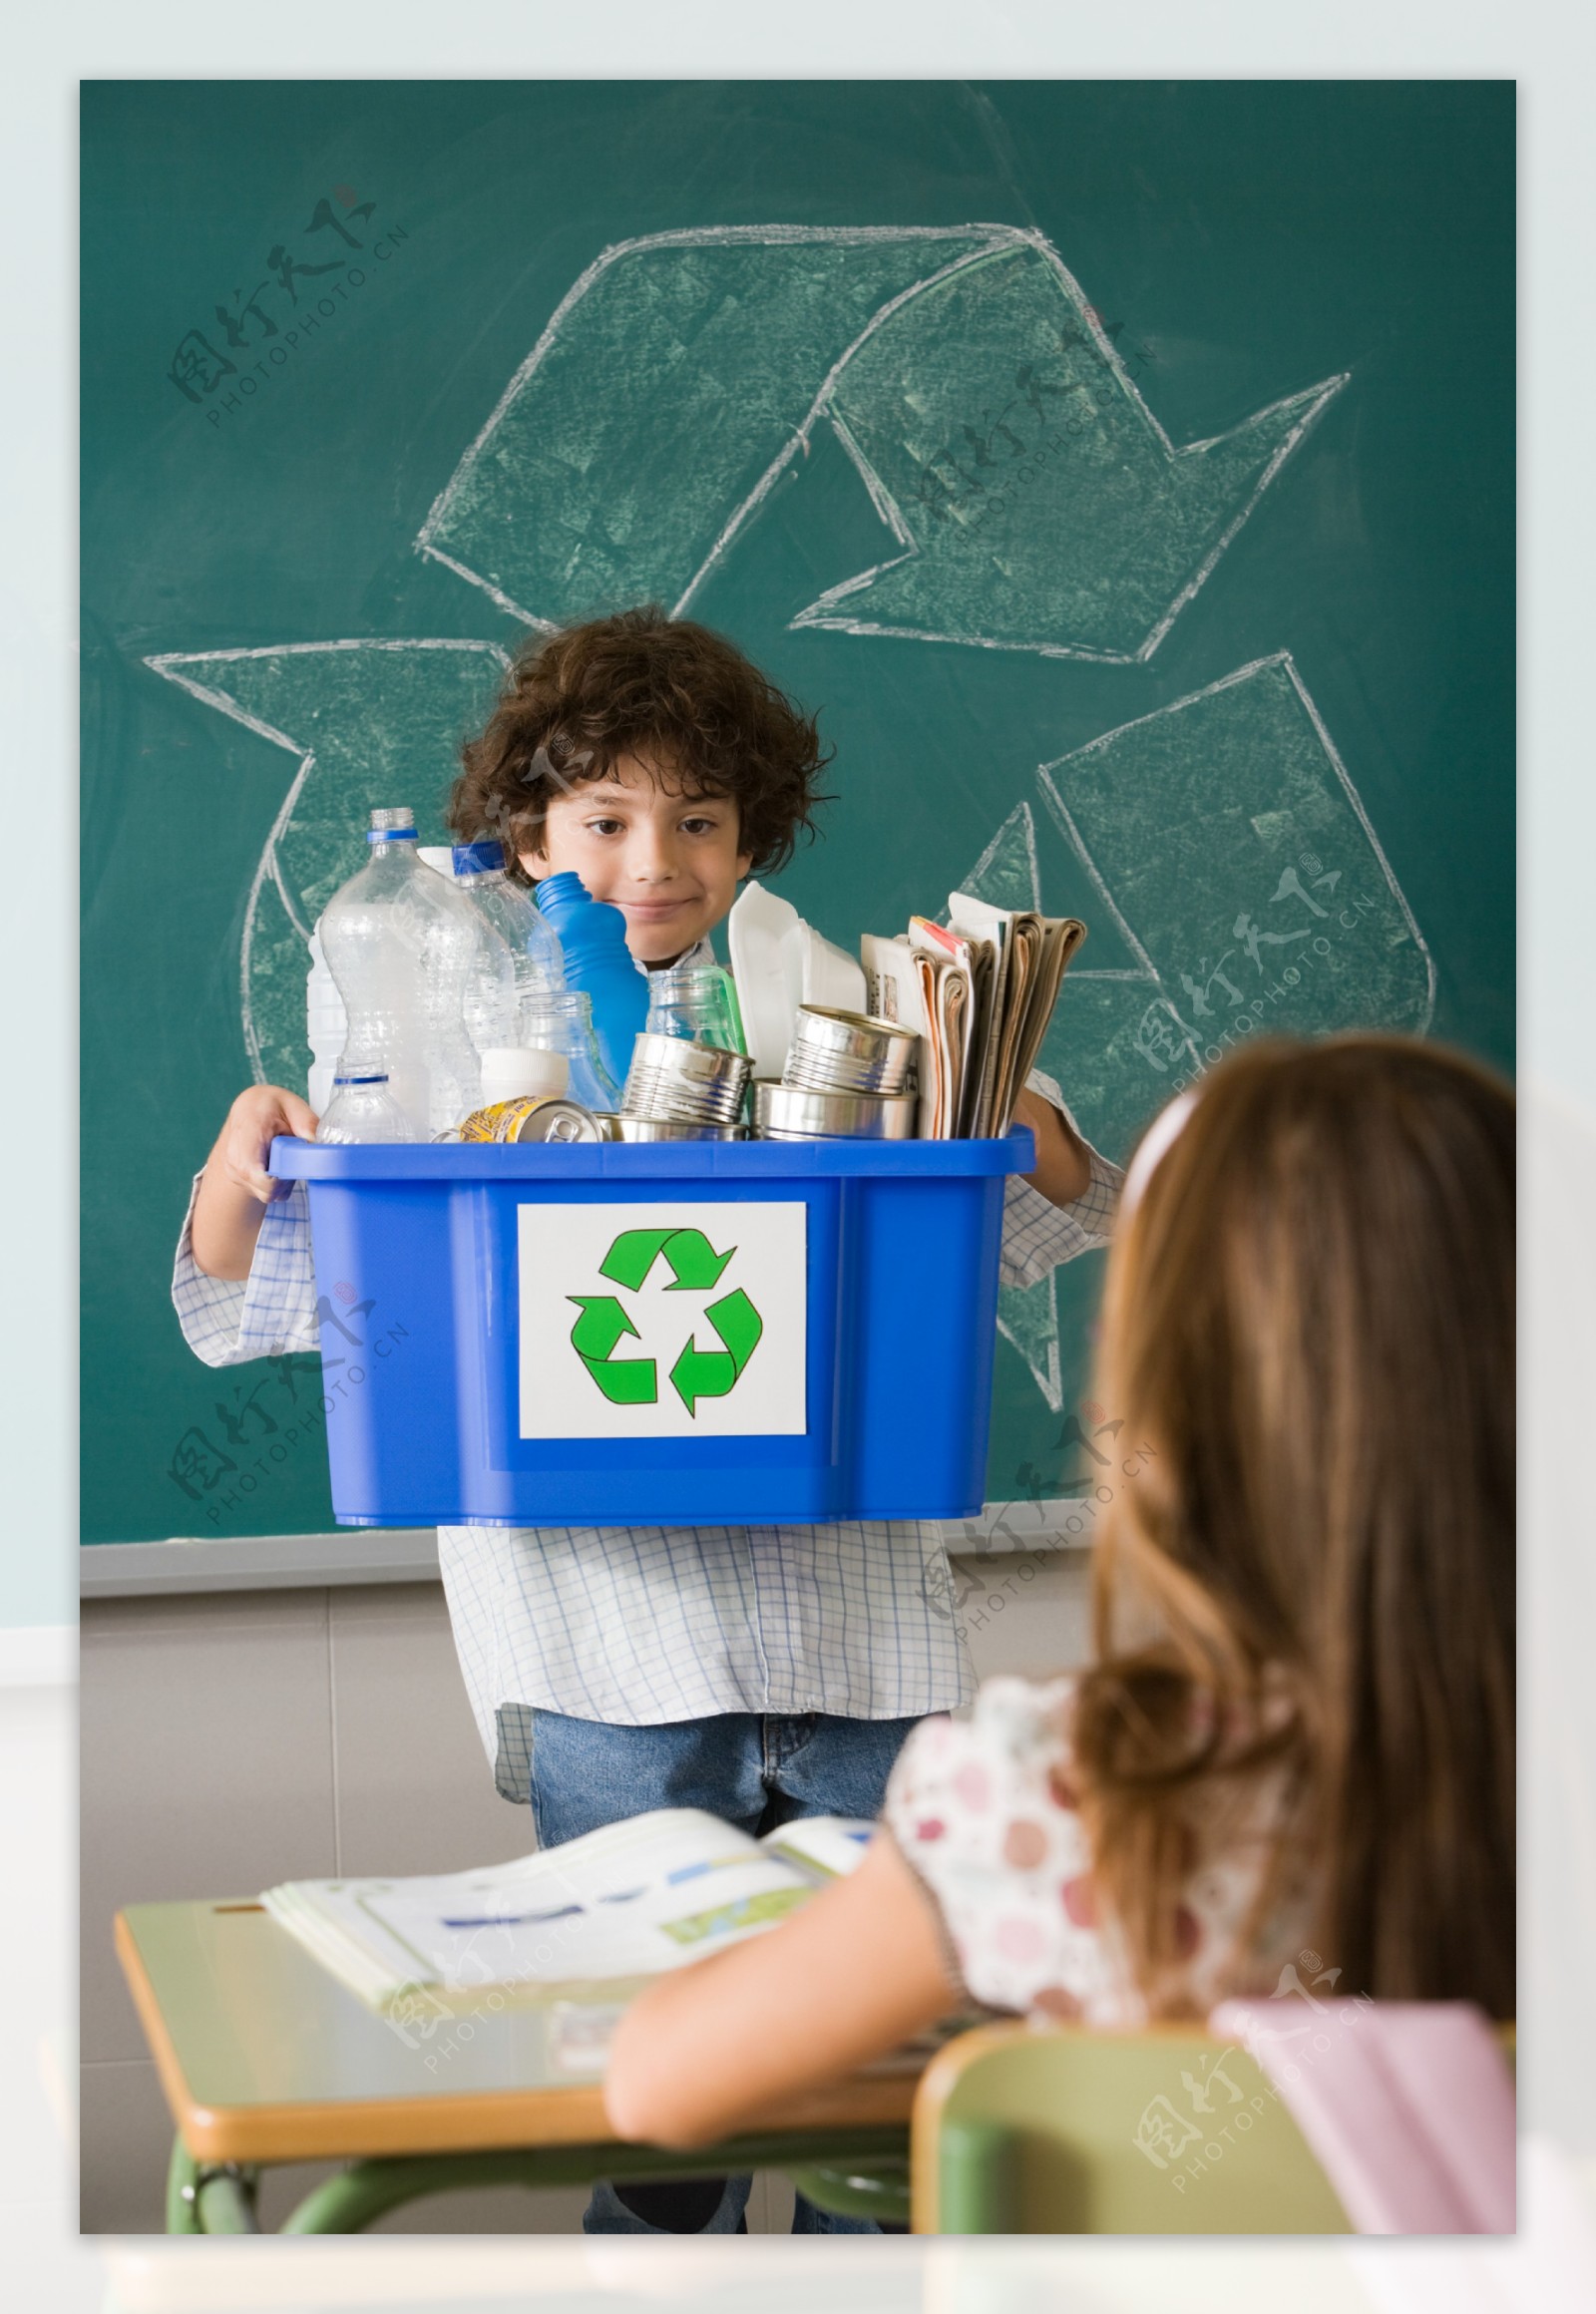 教室里抱环保箱的男孩图片图片